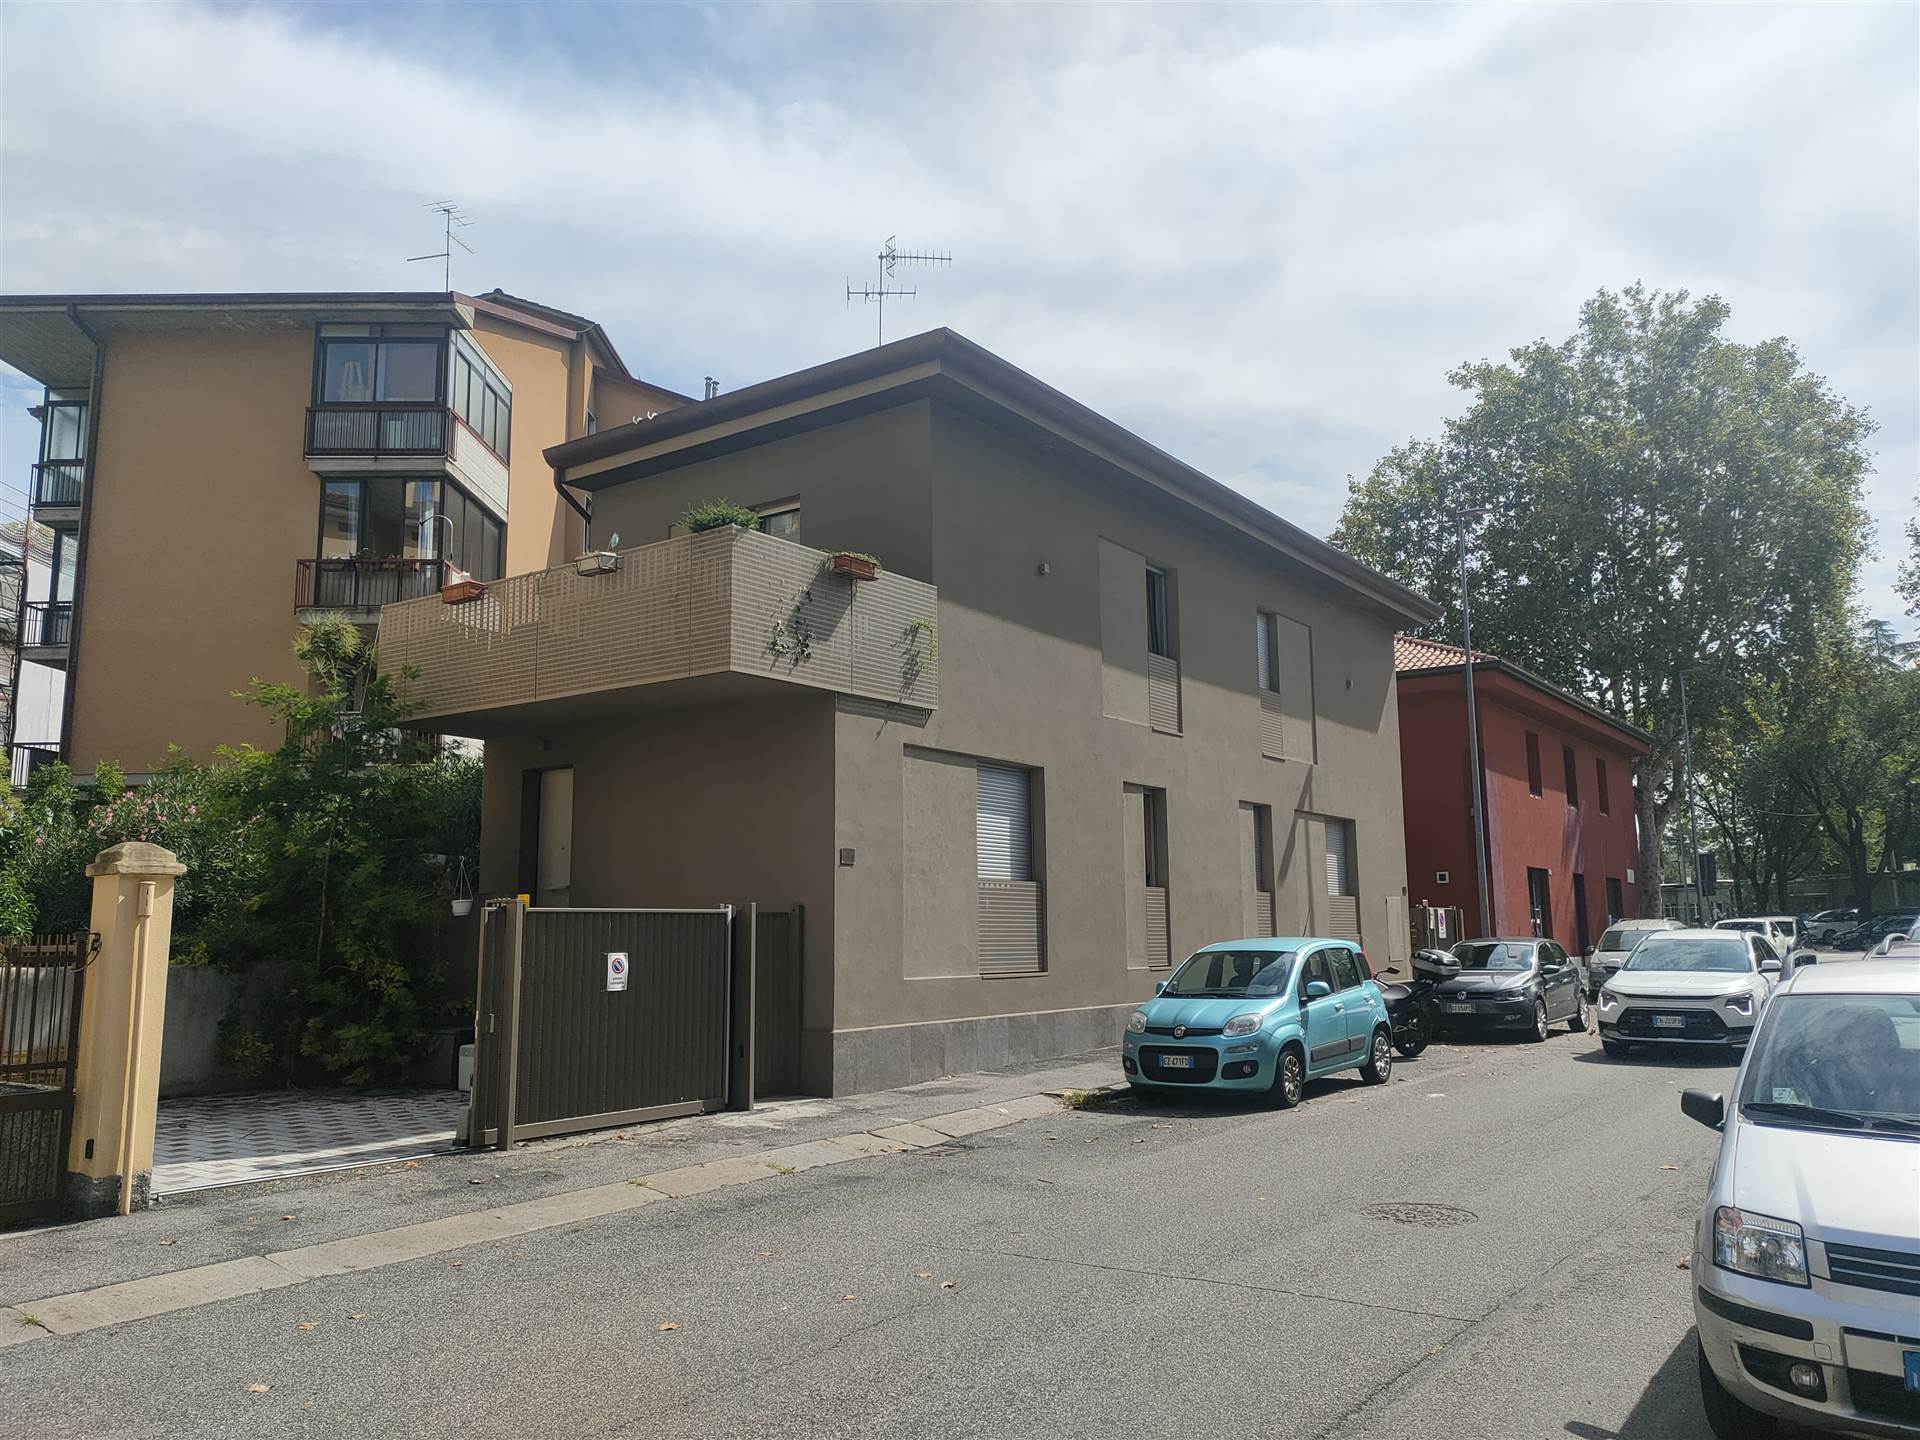 Soluzione Indipendente in affitto a Verona, 4 locali, zona Zona: 4 . Saval - Borgo Milano - Chievo, prezzo € 1.500 | CambioCasa.it